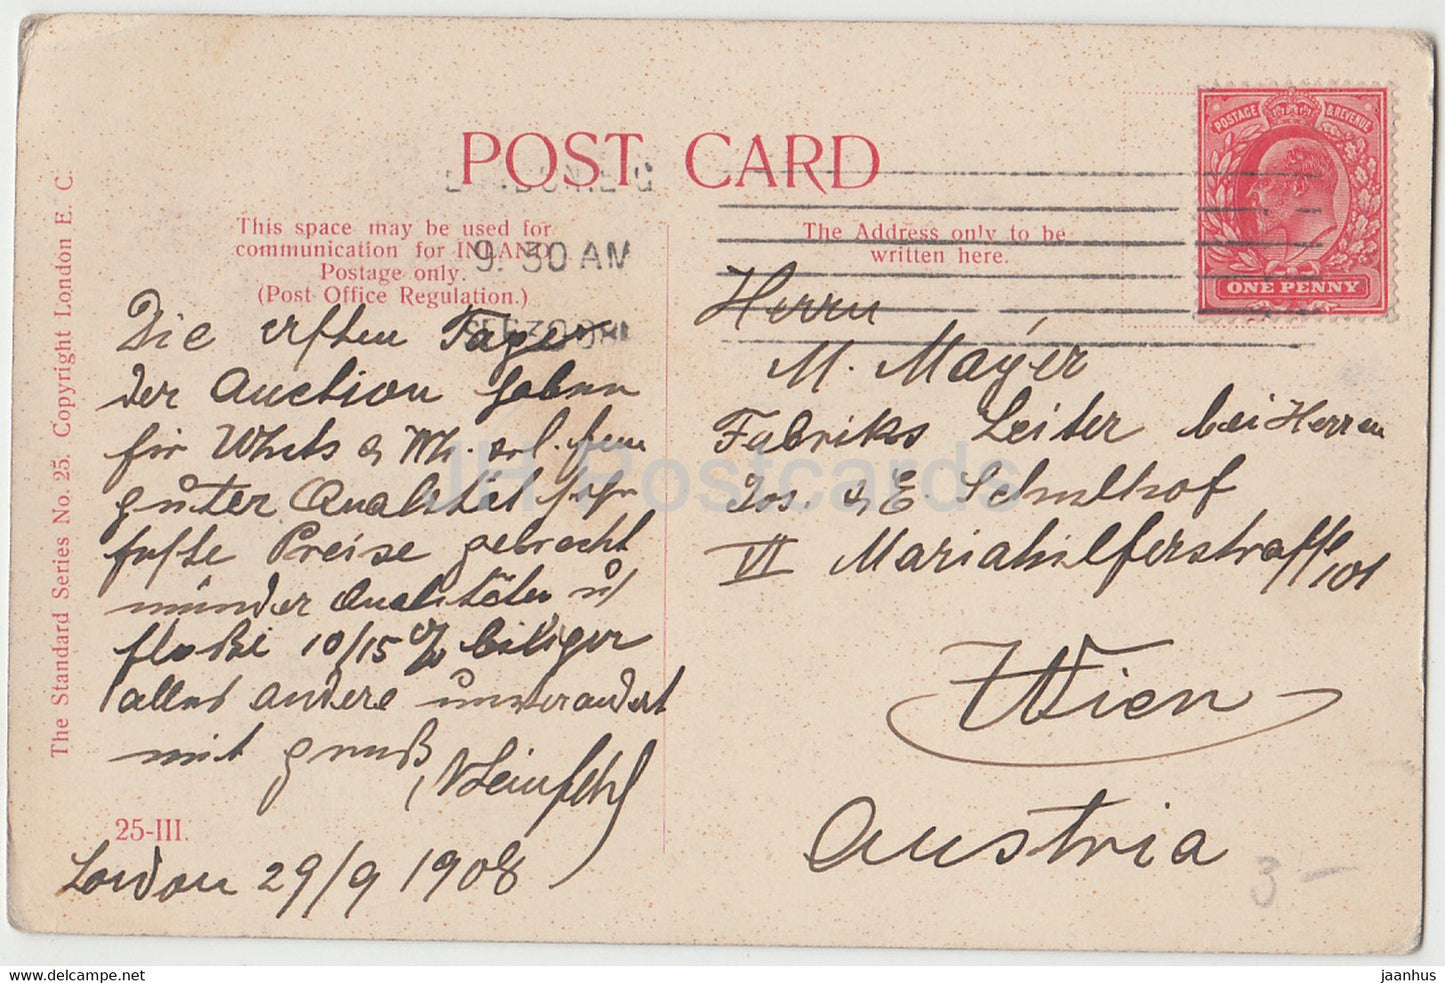 couple - femme et homme - 25 III - carte postale ancienne - 1908 - Royaume-Uni - utilisé